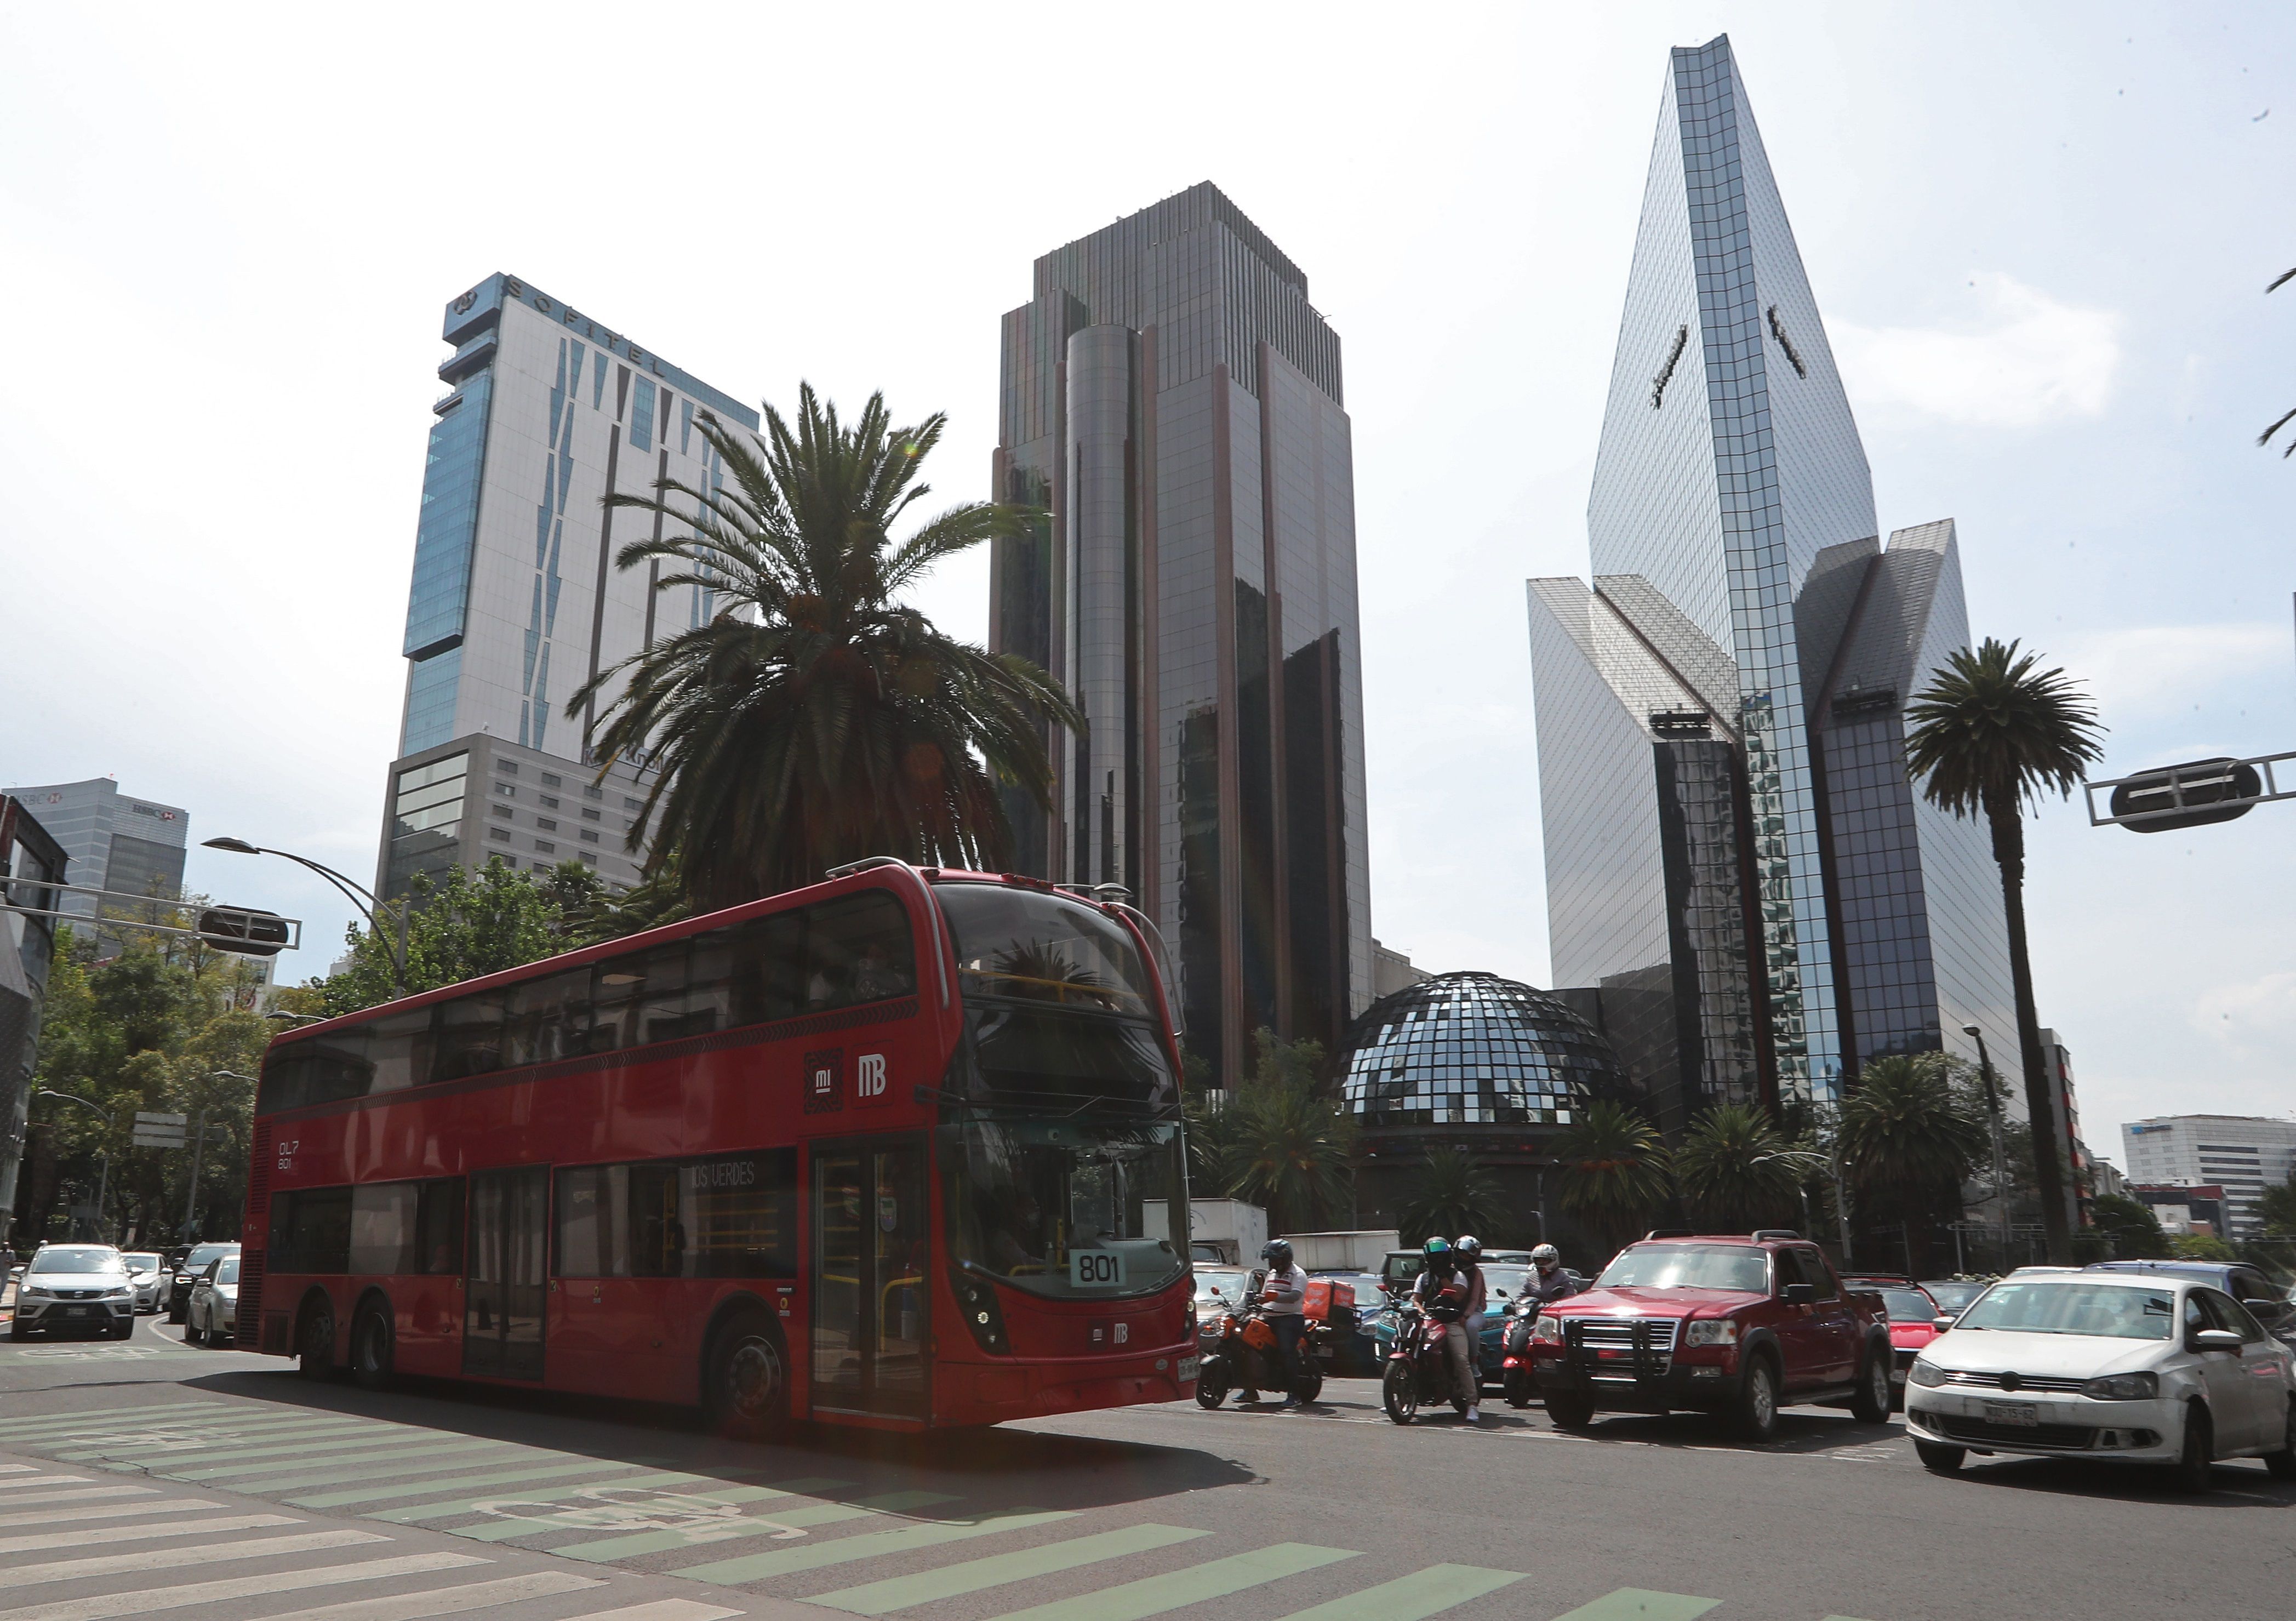 Vista del sistema de transporte Metrobus, circulando por la avenida Reforma en la Ciudad de México. (Foto: EFE) 